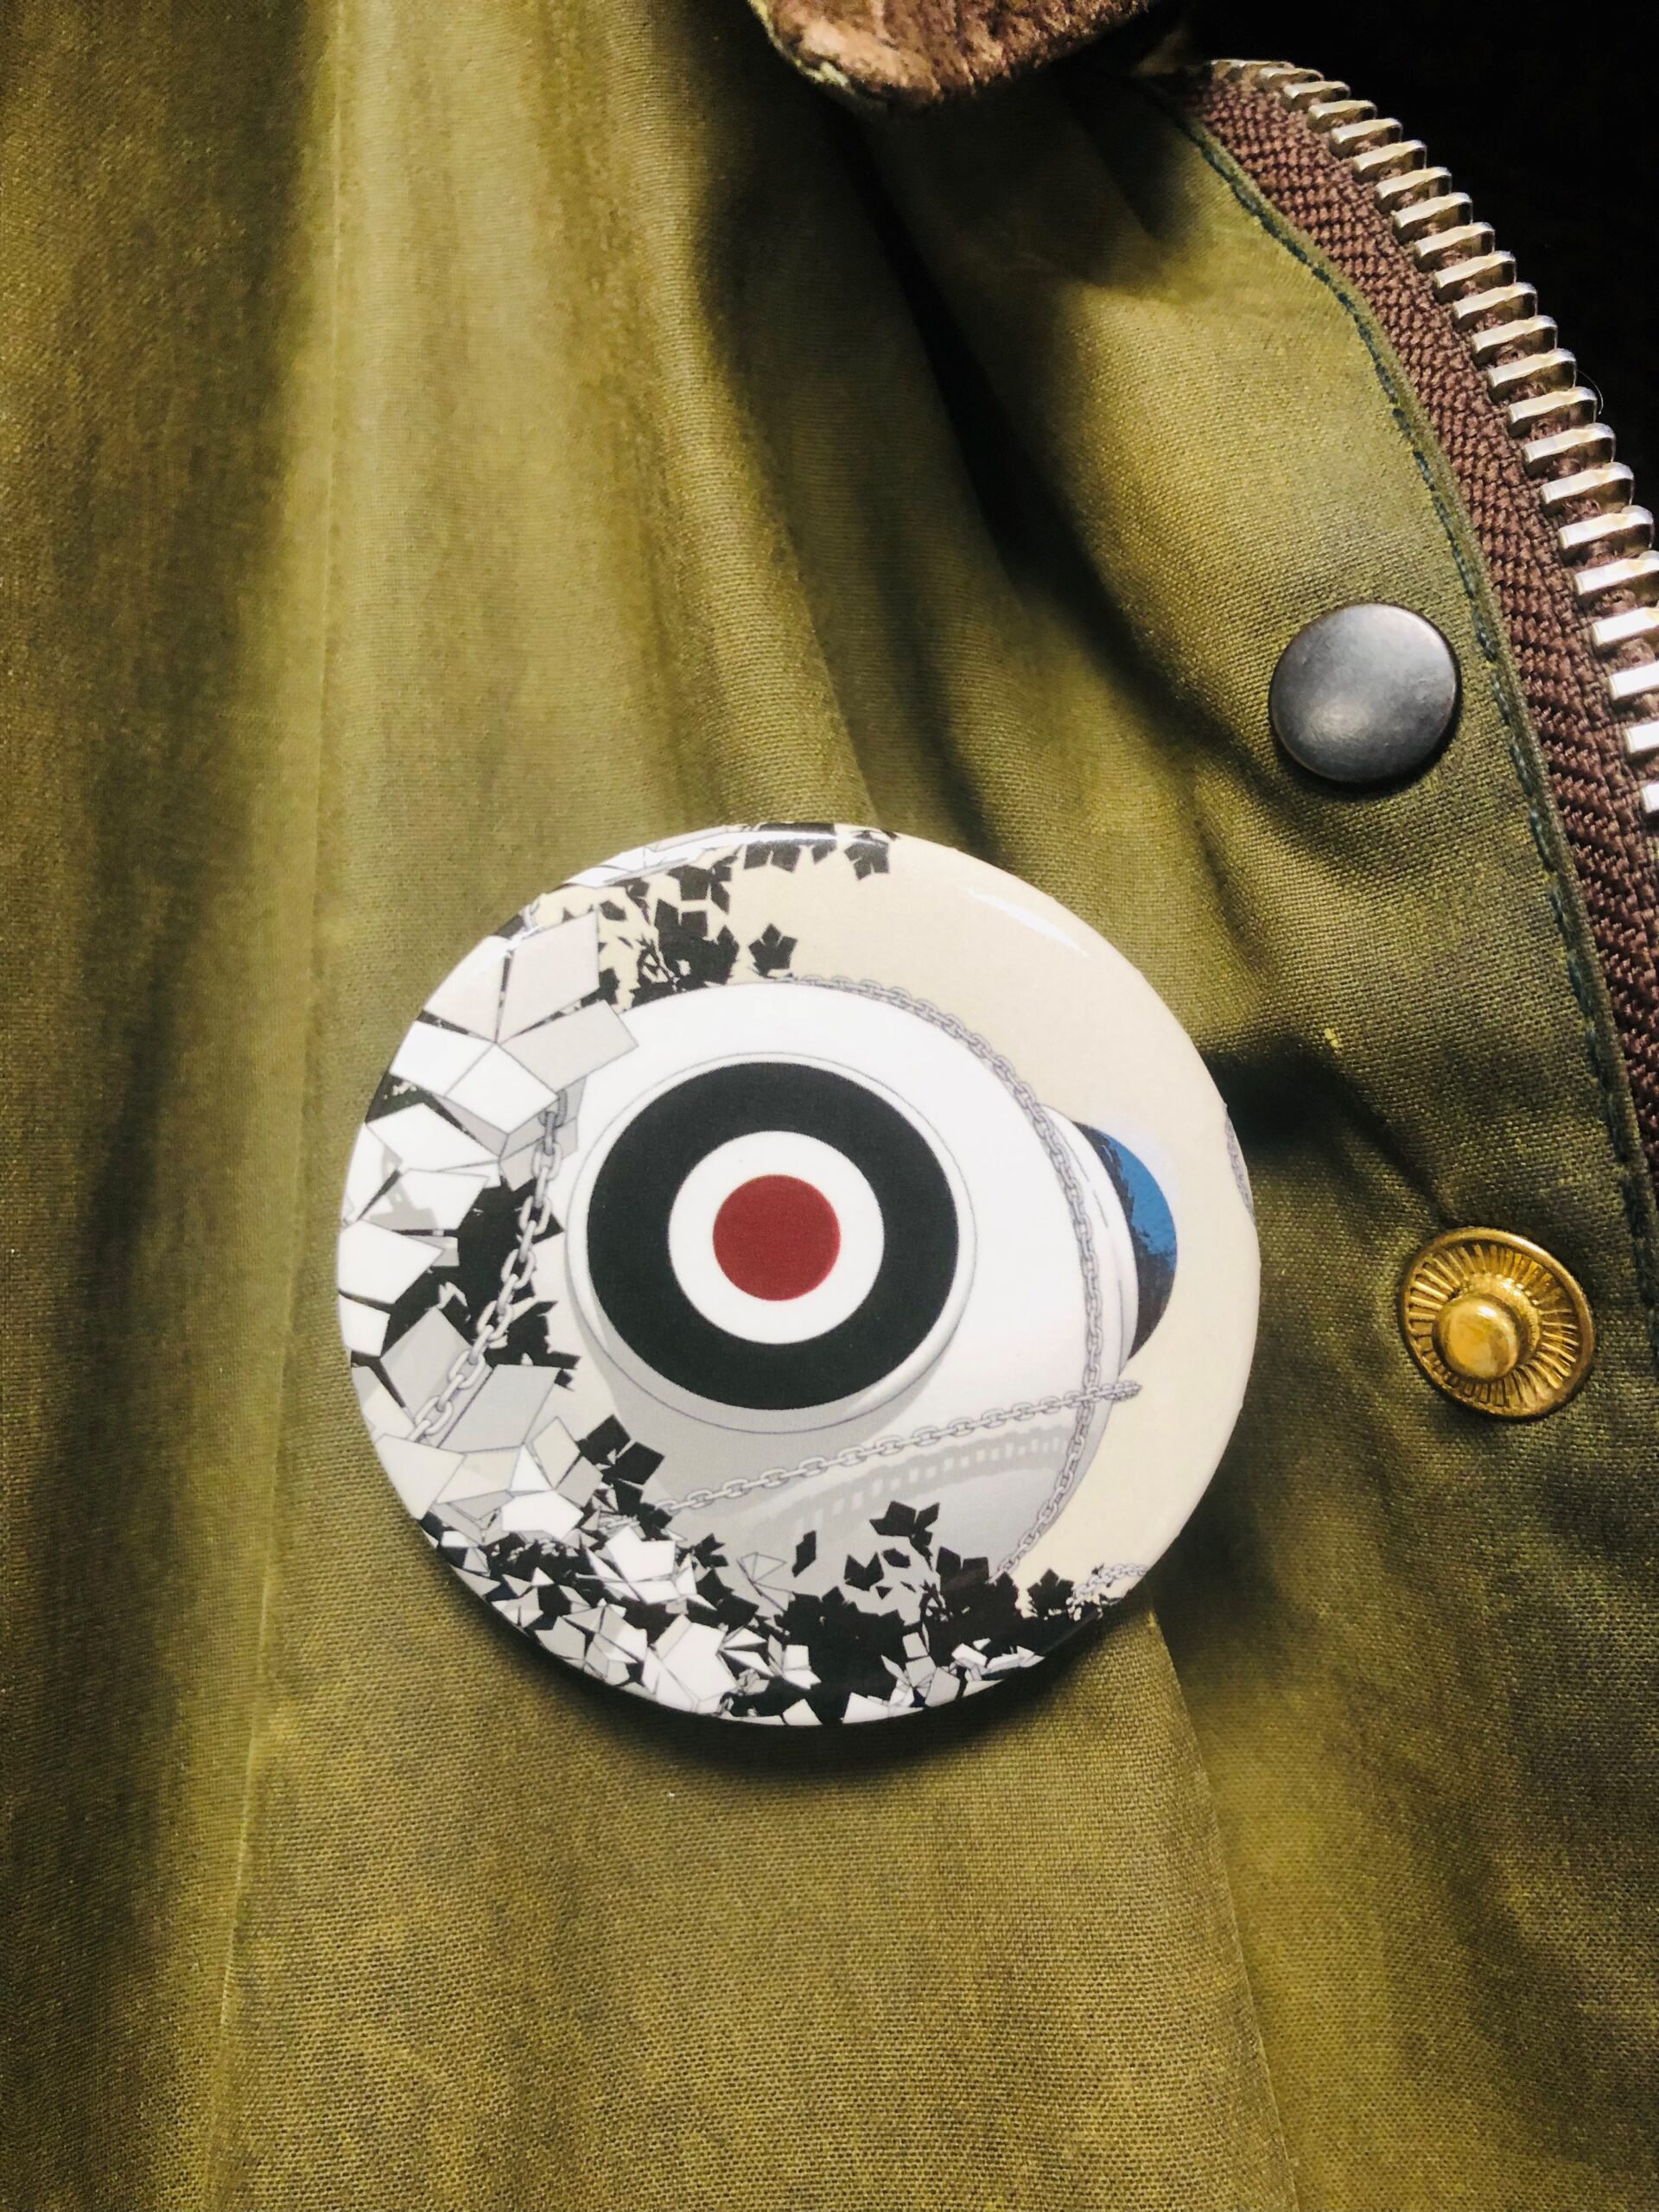 Bilde av en kulturnatt-button på en jakke. 